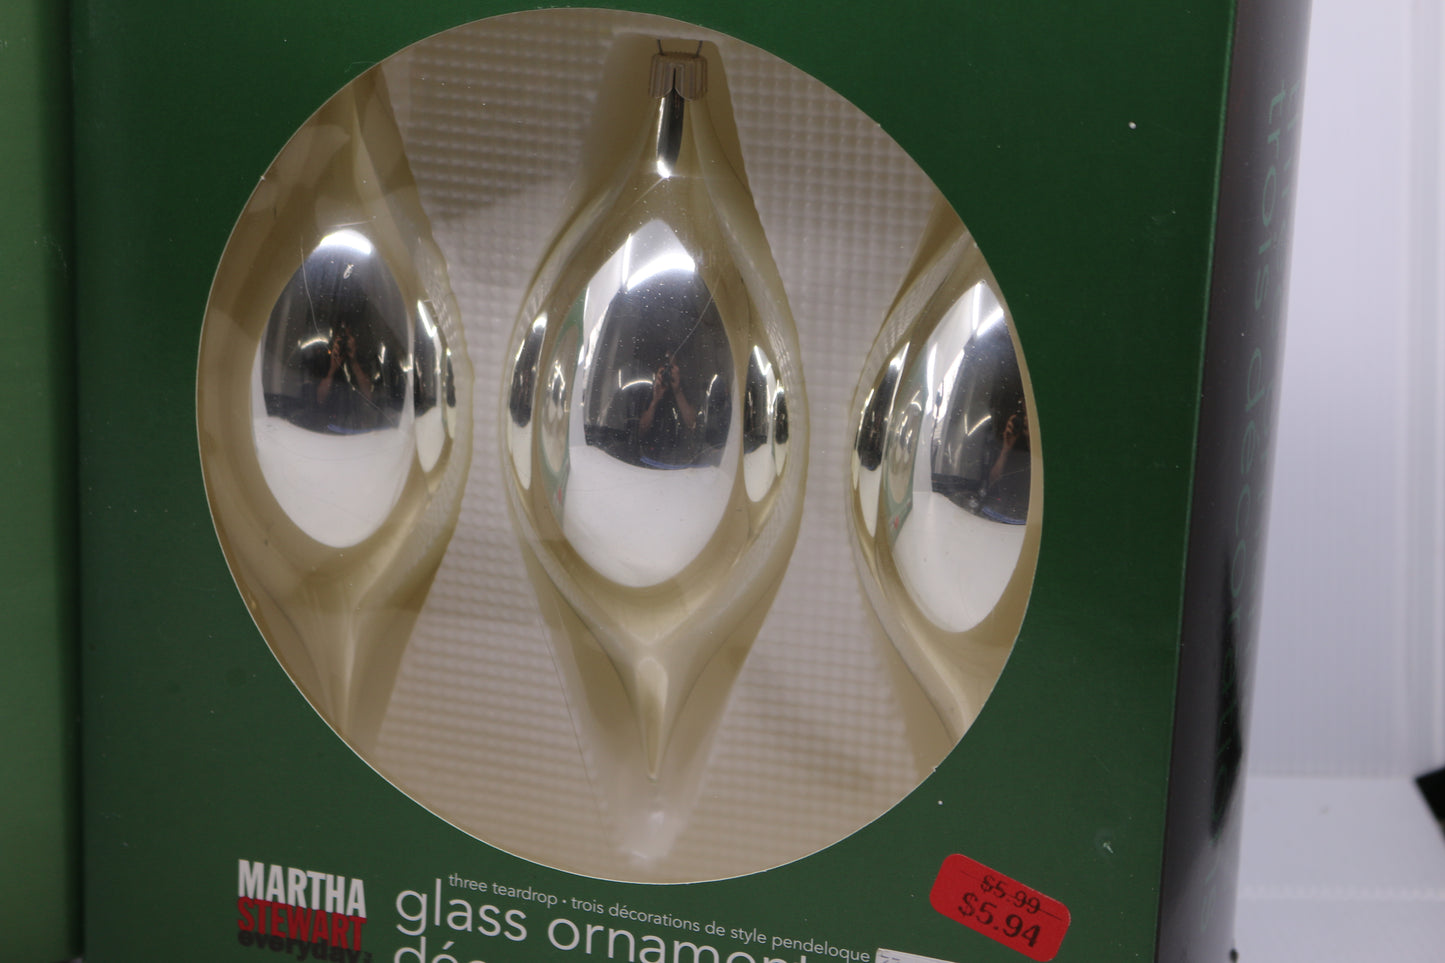 Six Martha Stewart everyday Glass woodland Ornaments teardrop in box Silver